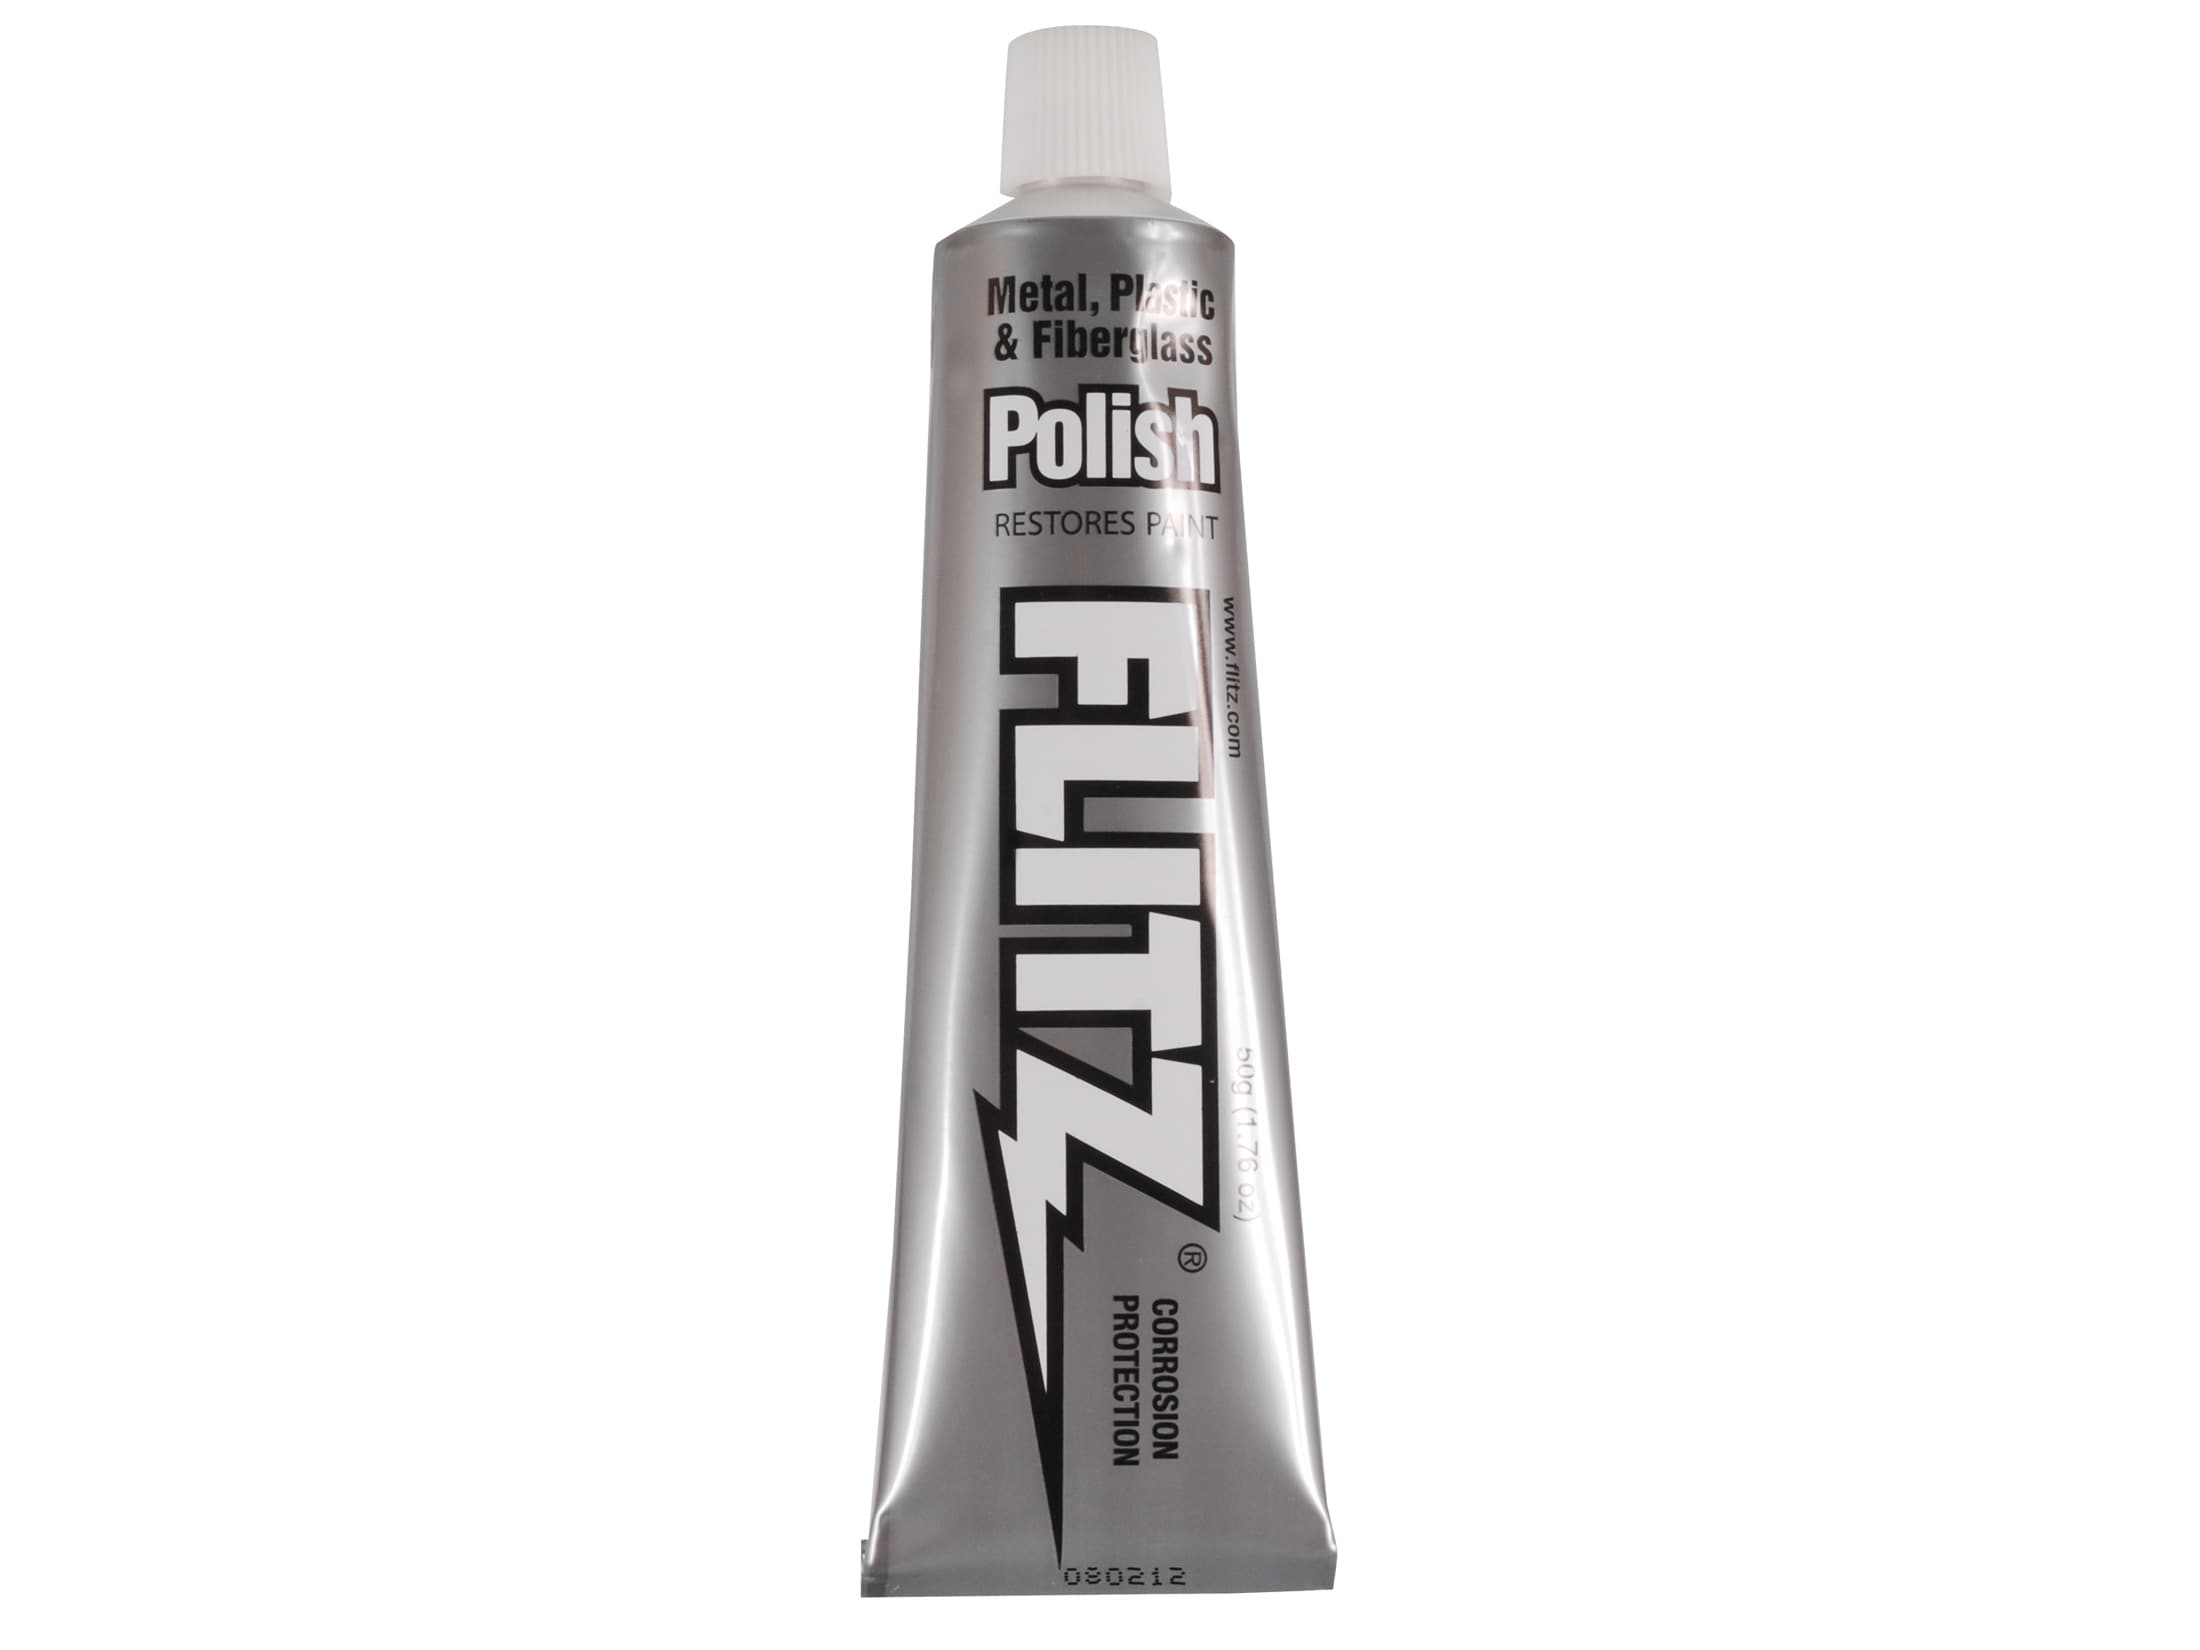 Flitz® Metal Polish - TP Tools & Equipment